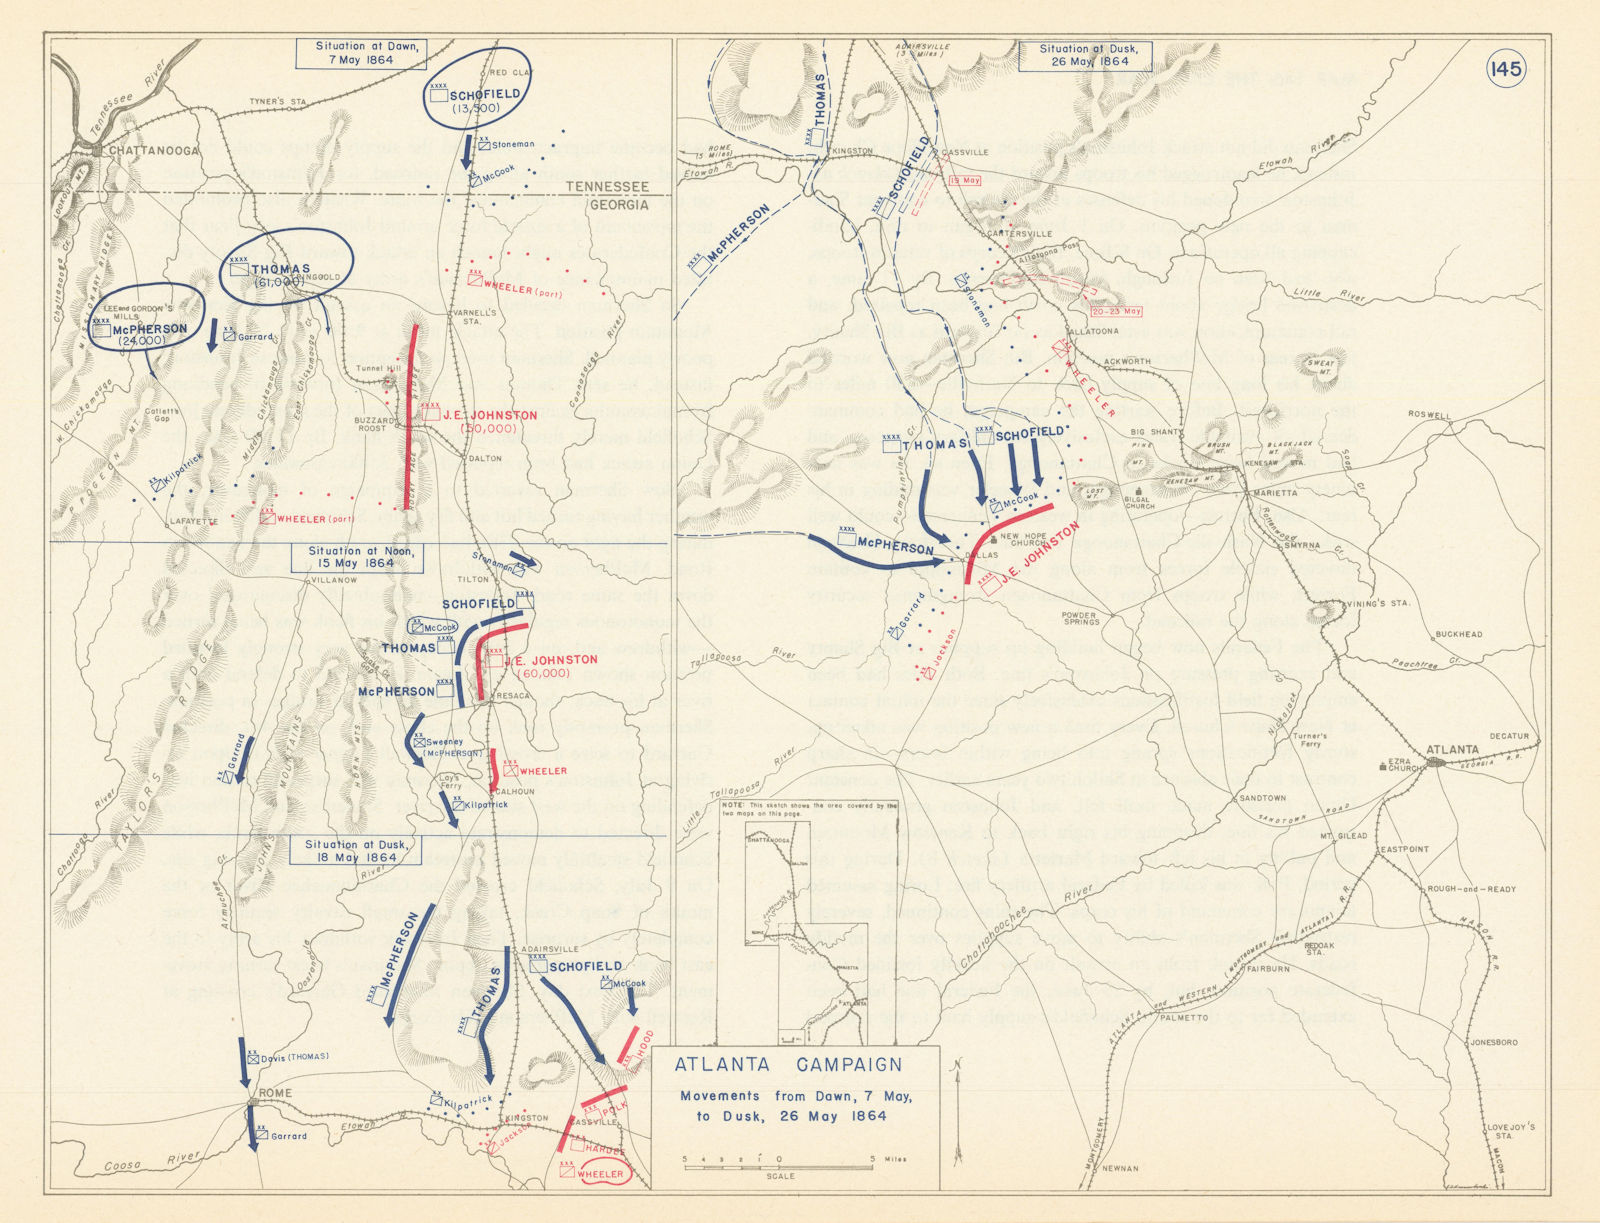 American Civil War. 7-26 May 1864 Atlanta Campaign. Georgia 1959 old map